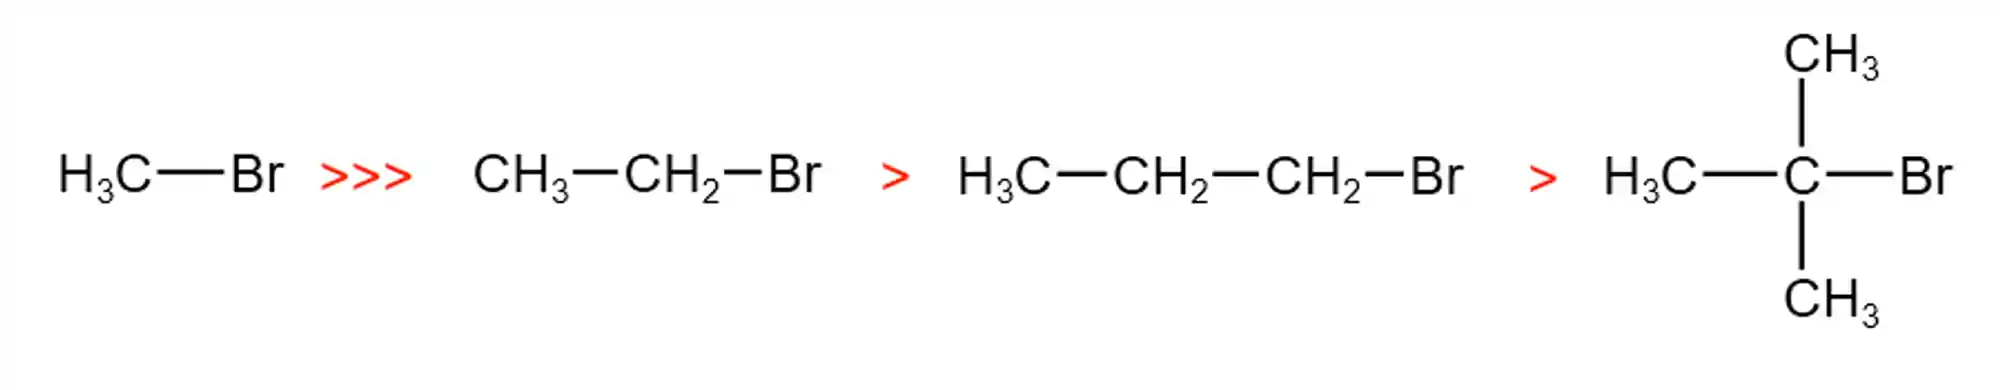 Decaimento da velocidade conforme os hidrogênios são substituídos por grupos metila.